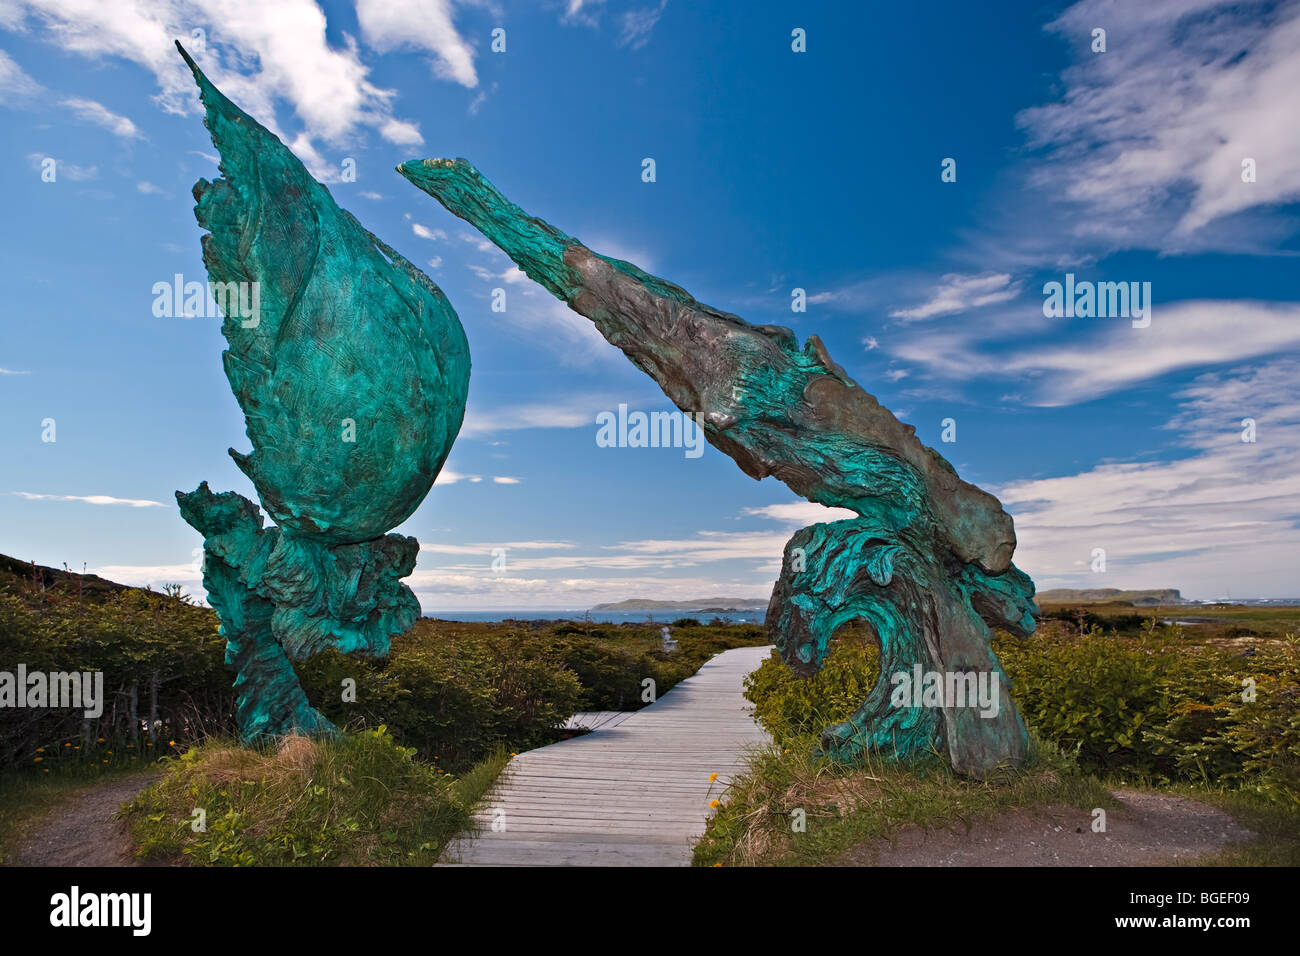 Sculpture en bronze intitulée 'réunion de deux mondes' dévoilé le 5 juillet 2002 à L'Anse aux Meadows, lieu historique national du Canada Banque D'Images